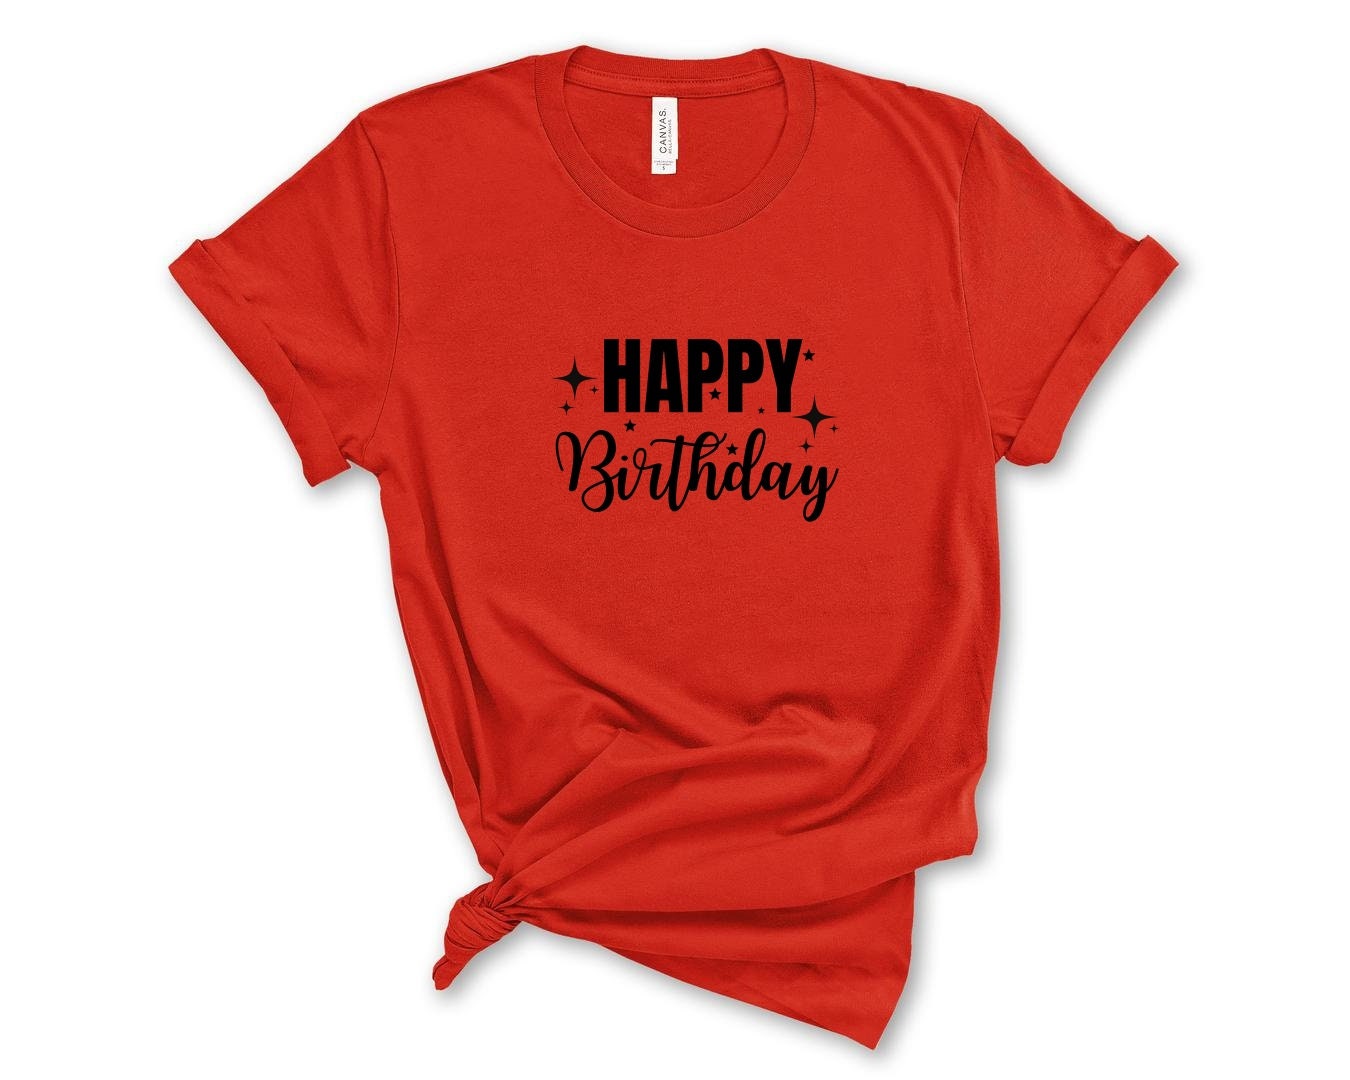 Discover Happy Birthday Shirt, Birthday Gift, Birthday Party T-Shirt